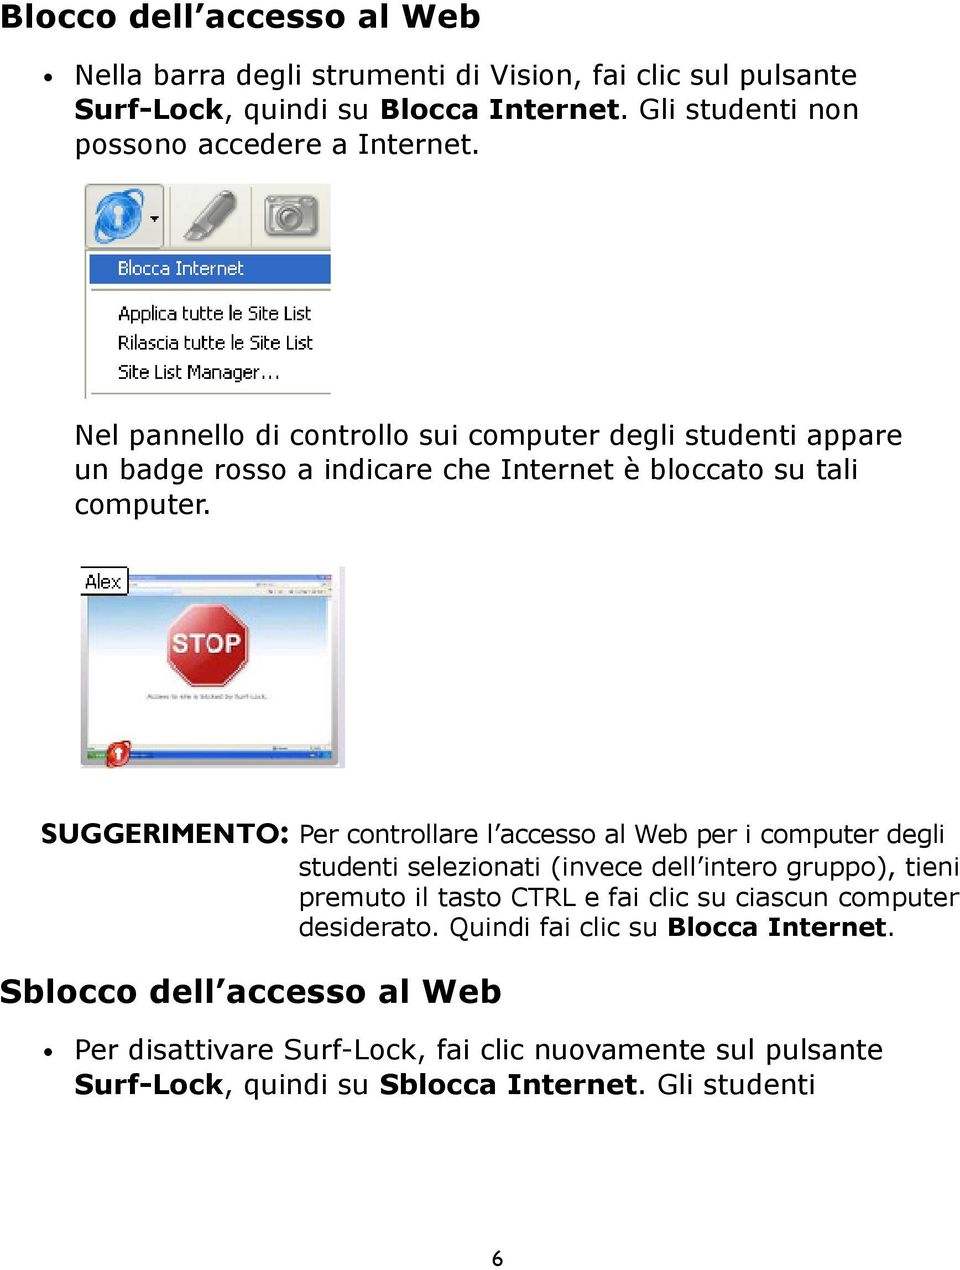 Nel pannello di controllo sui computer degli studenti appare un badge rosso a indicare che Internet è bloccato su tali computer.